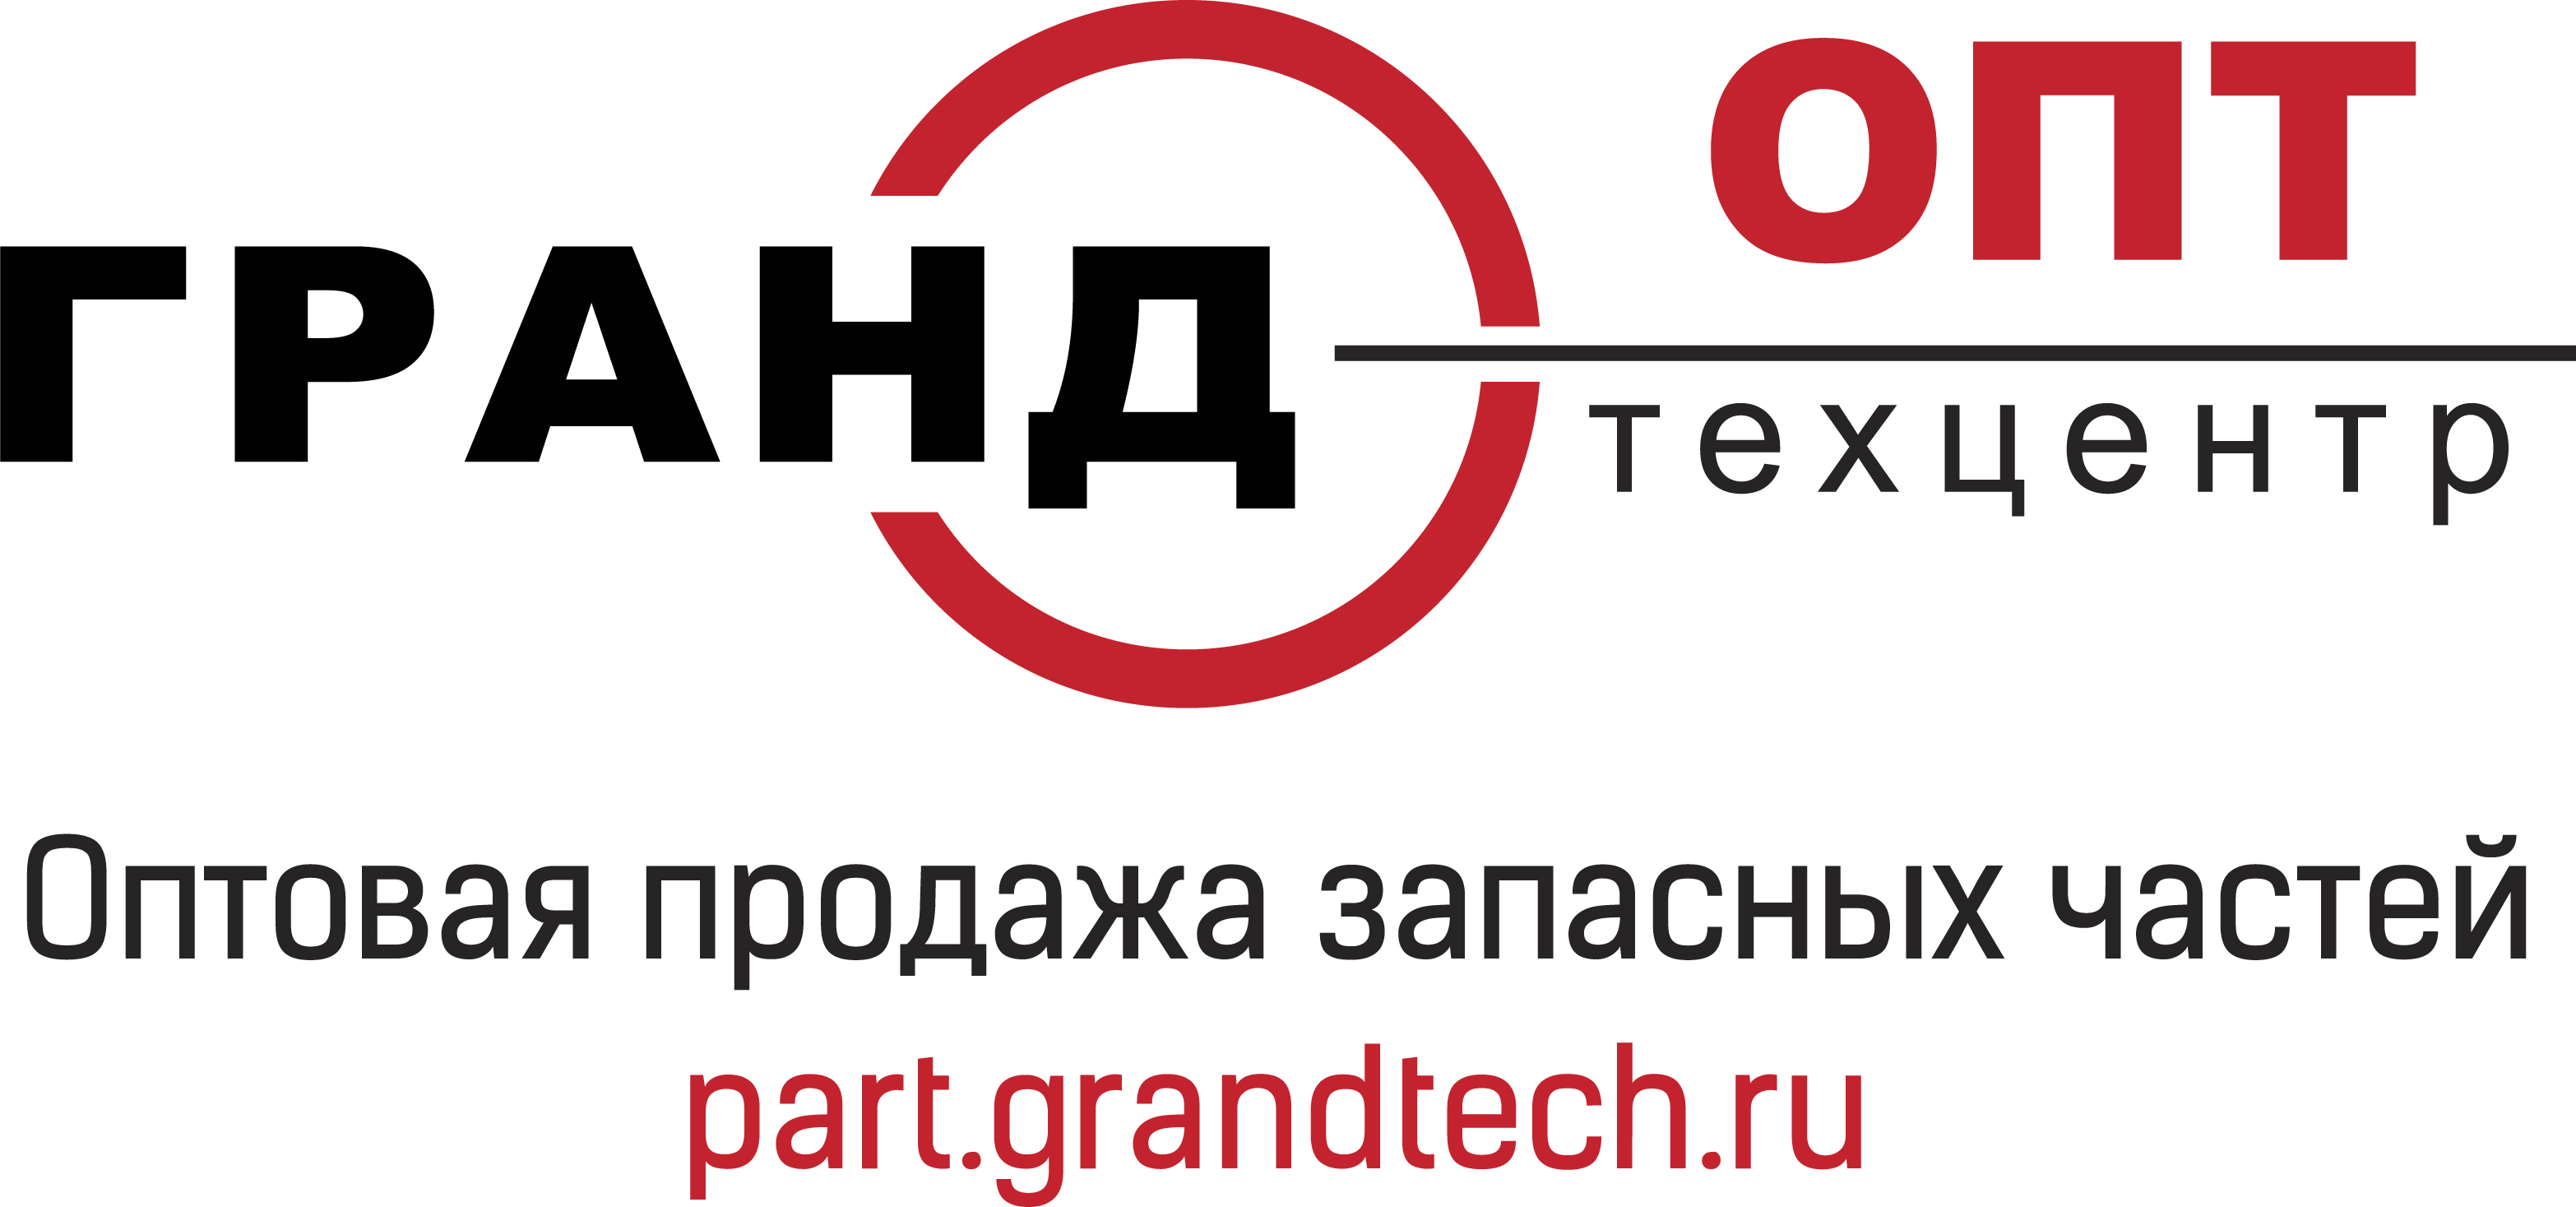 Part.Grandtech - сайт по продаже запасных частей во Владимире и области